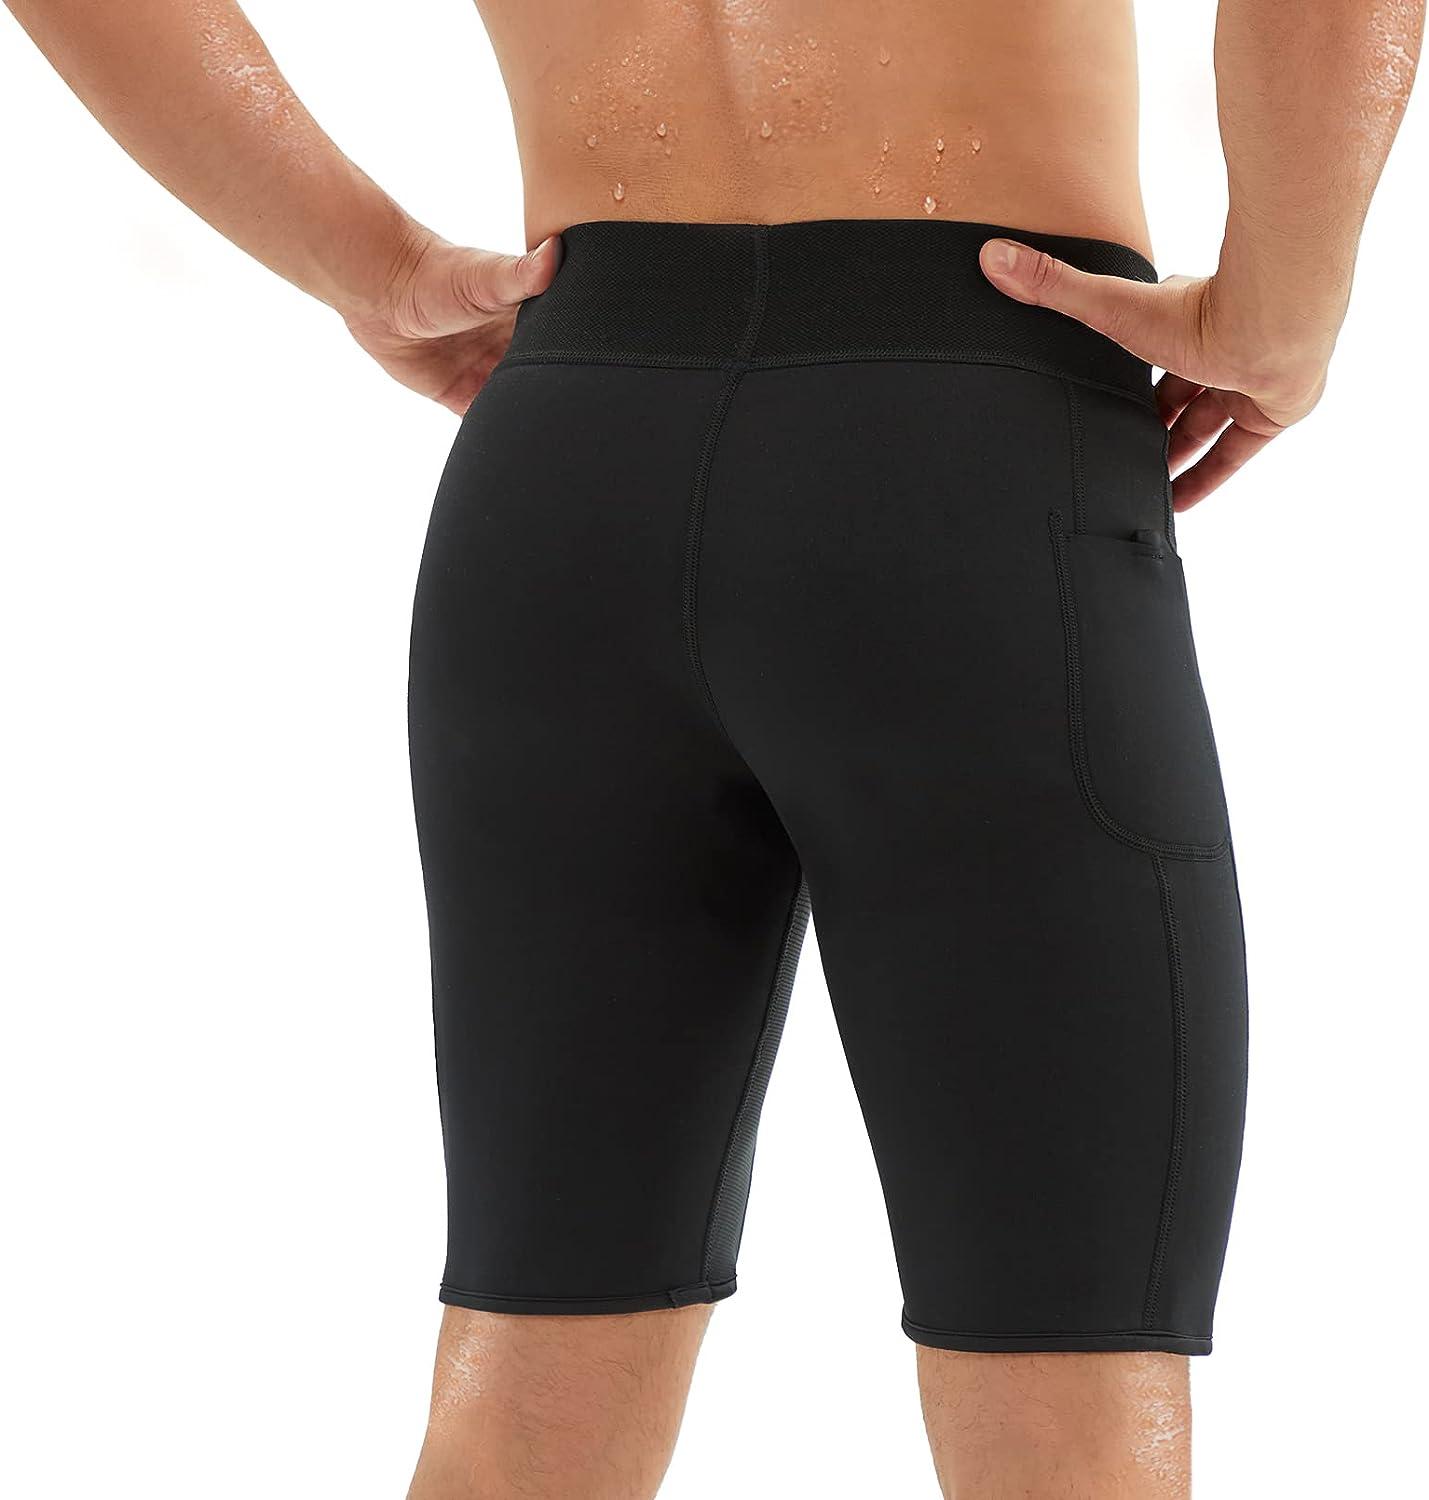 Men's Neoprene Hot Sauna Exercise Pants For Weight Loss - Nebility